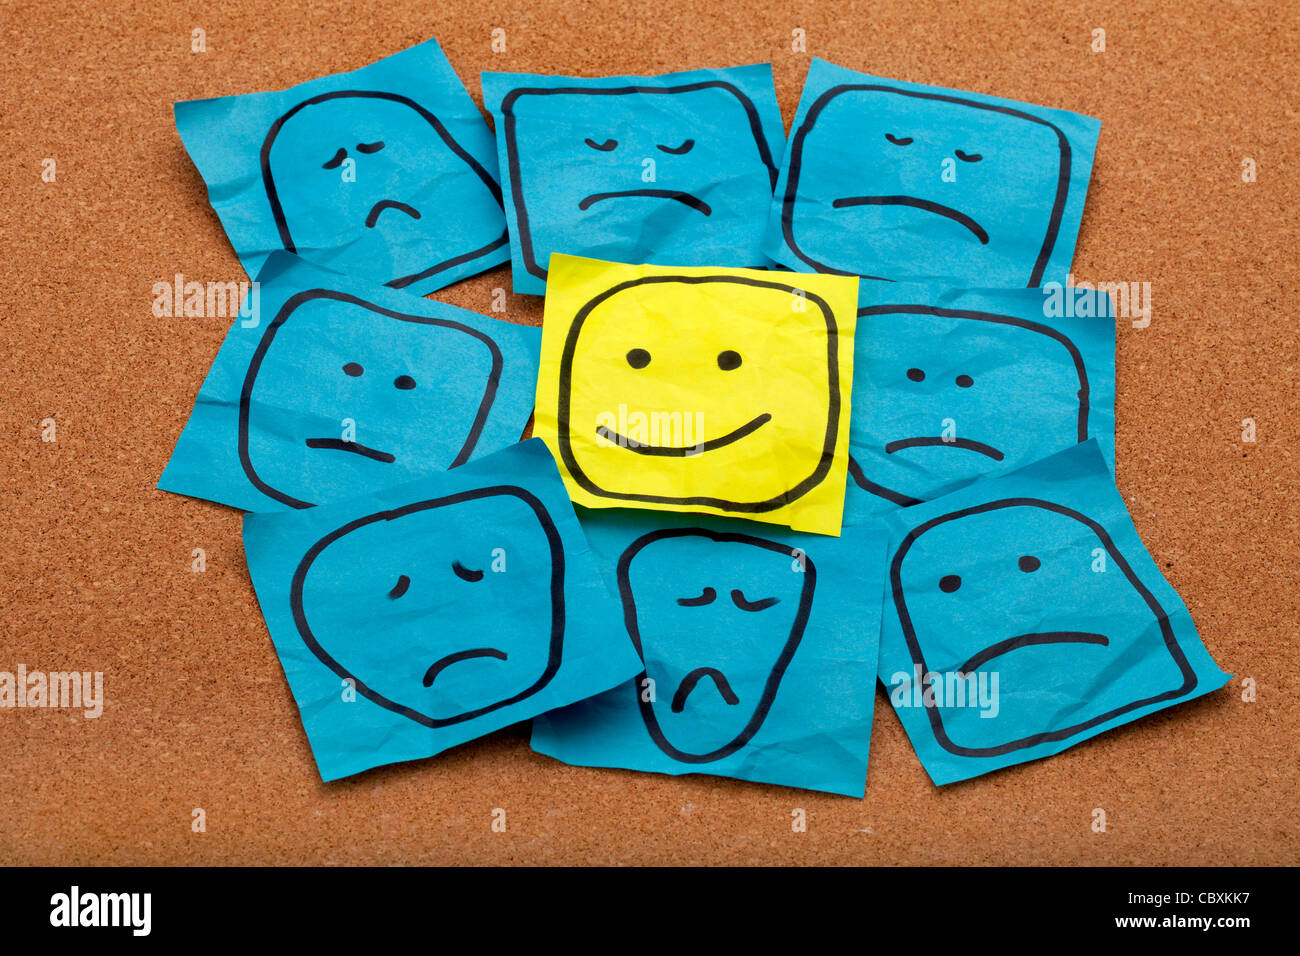 Attitude positive ou optimisme concept - heureux smiley sur Post-it jaune entourée de triste malheureux visages bleu Banque D'Images